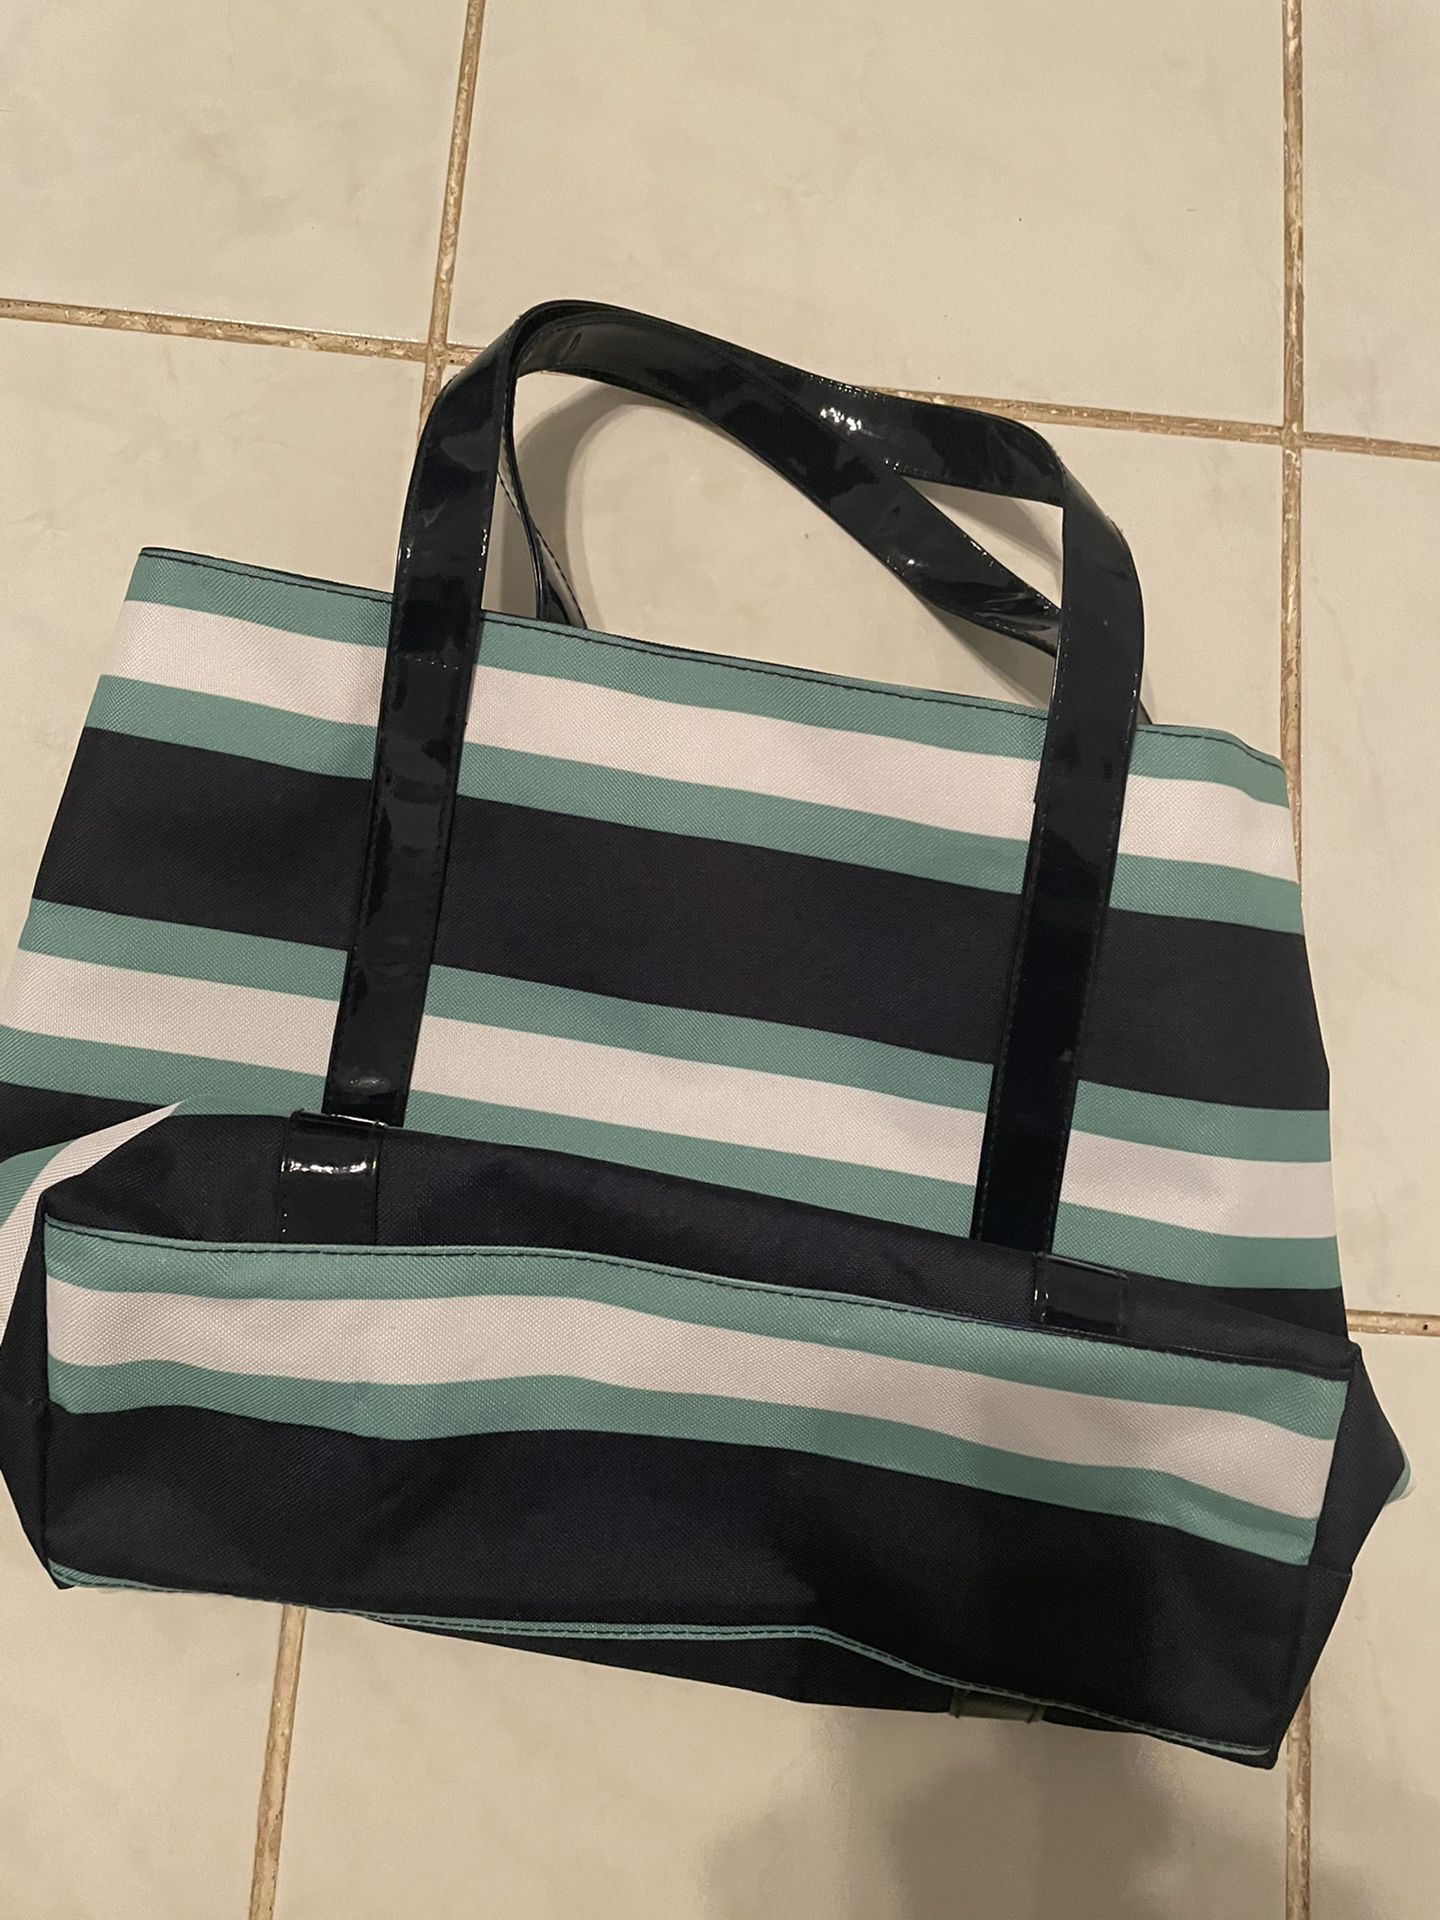 Lancôme Bags It’s New Size Large $10 Each 